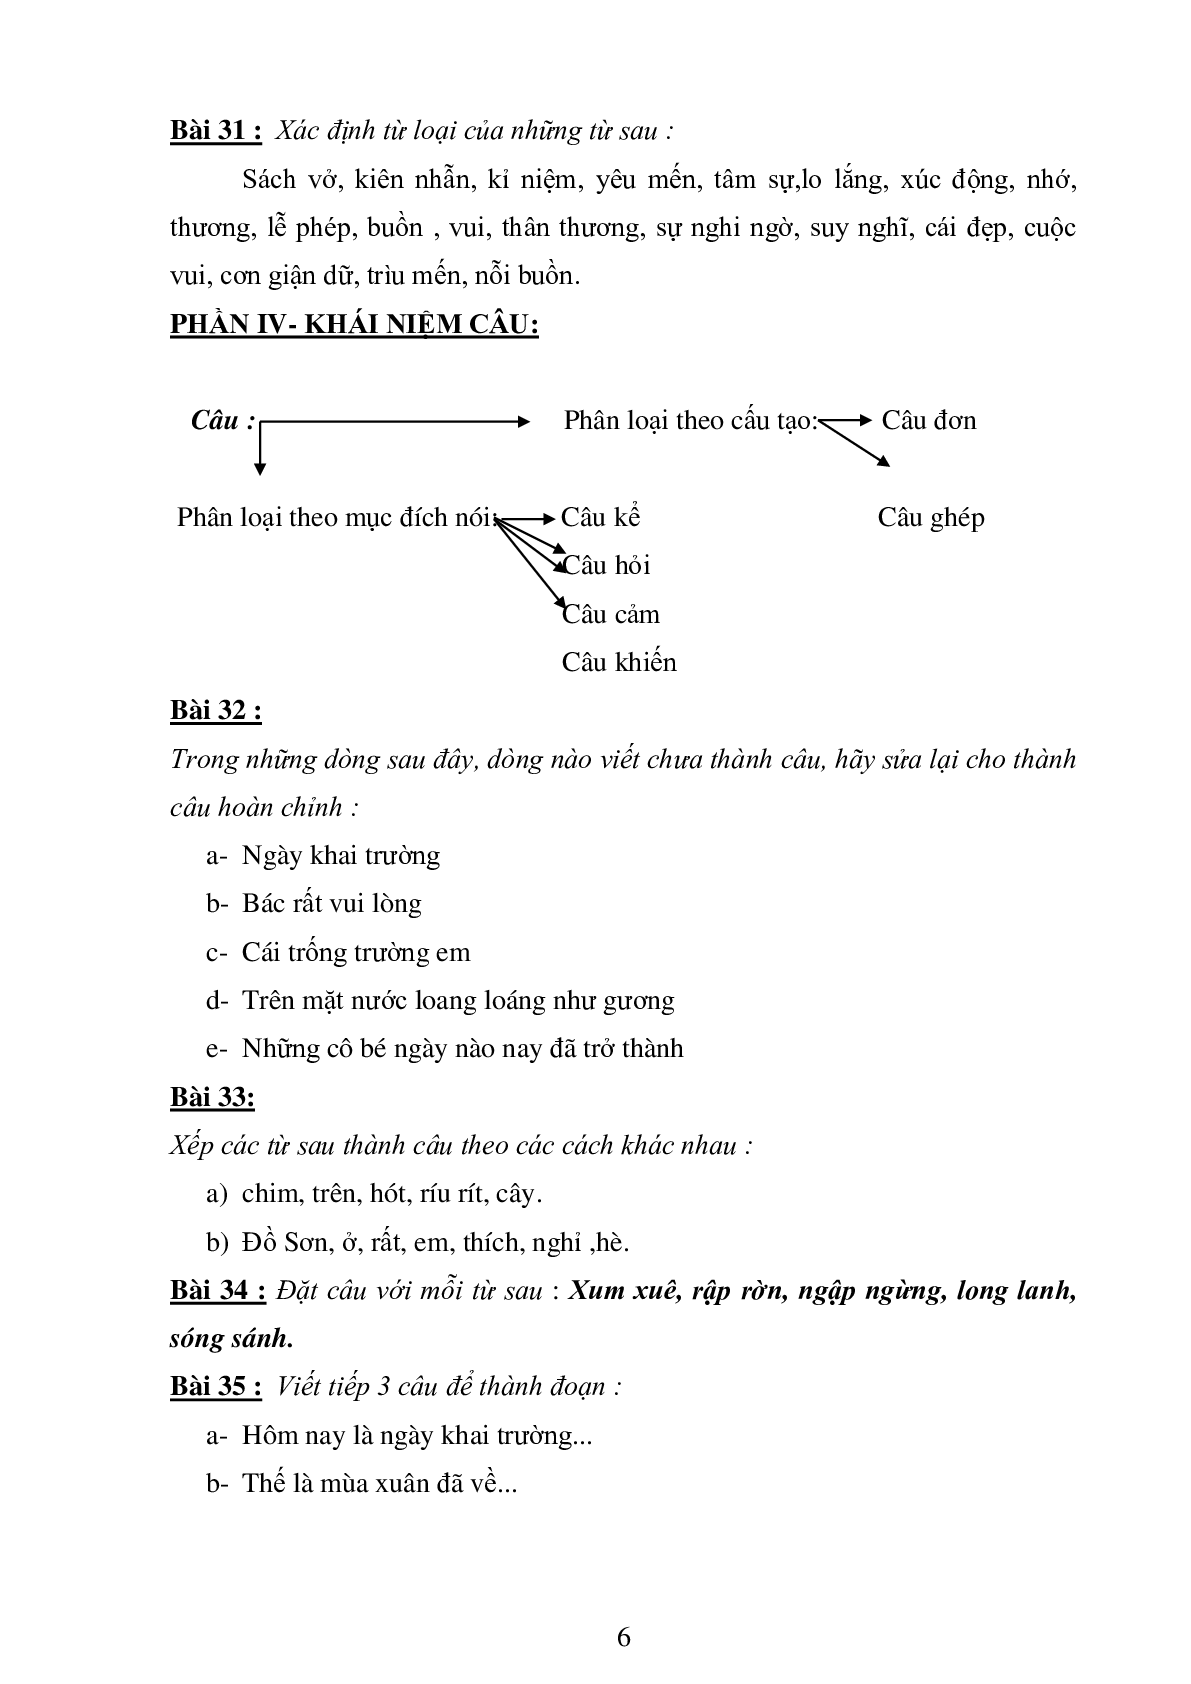 74 bài tập luyện từ và câu môn Tiếng Việt lớp 4 (trang 6)